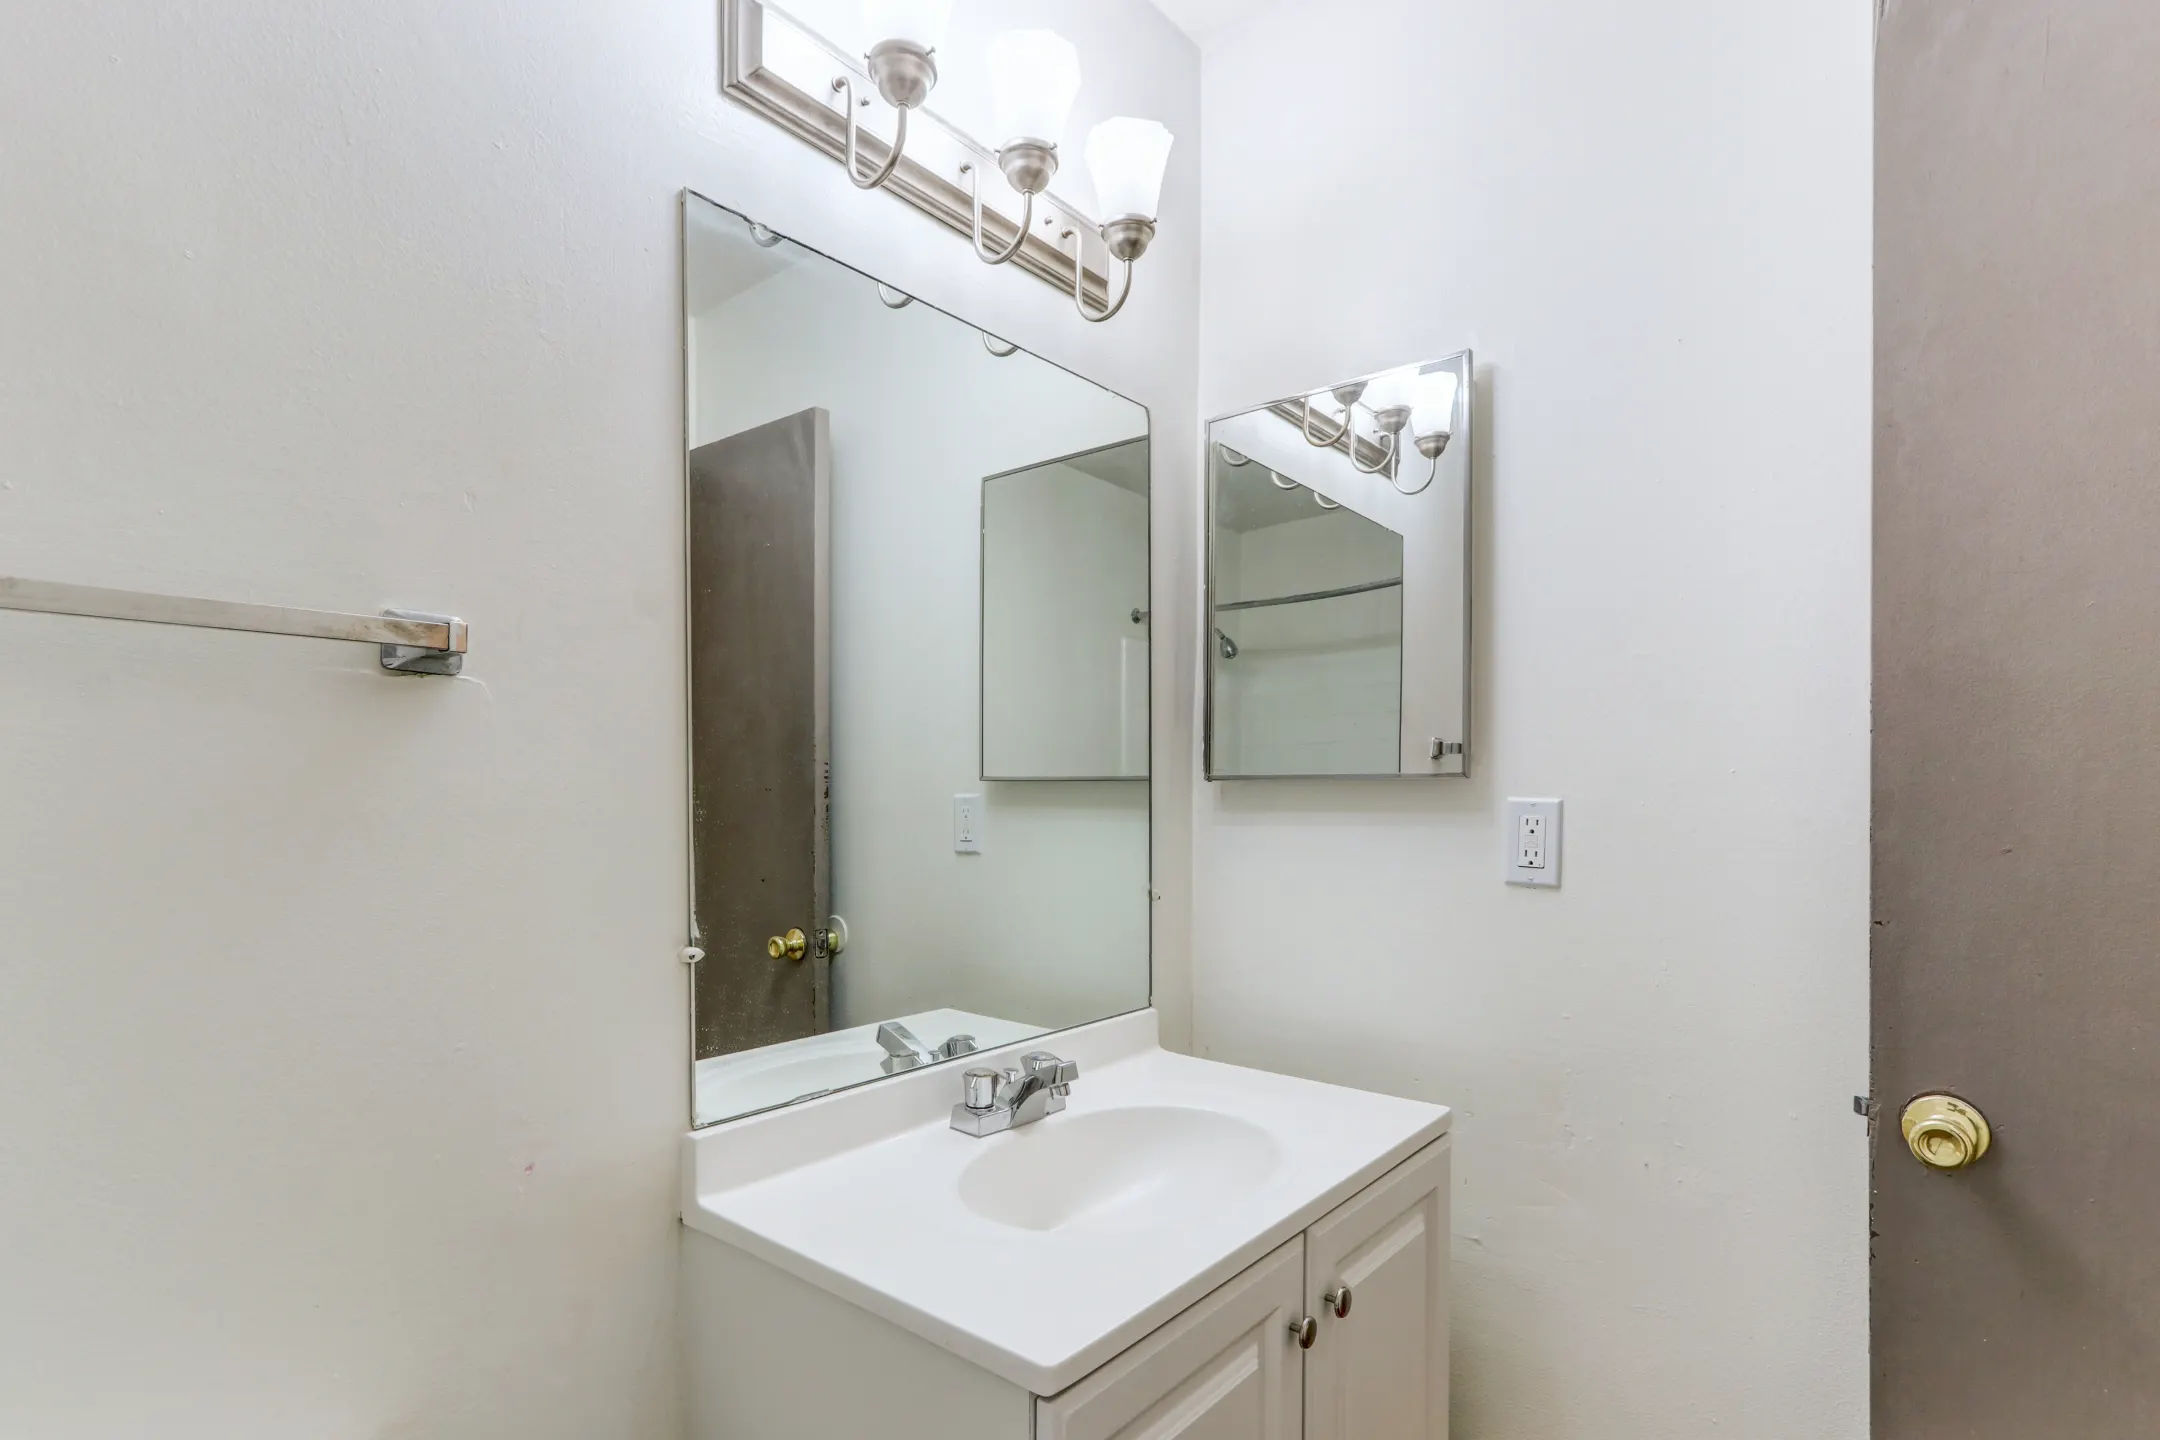 Bathroom - Parkway Village Apartments - Clinton Township, MI